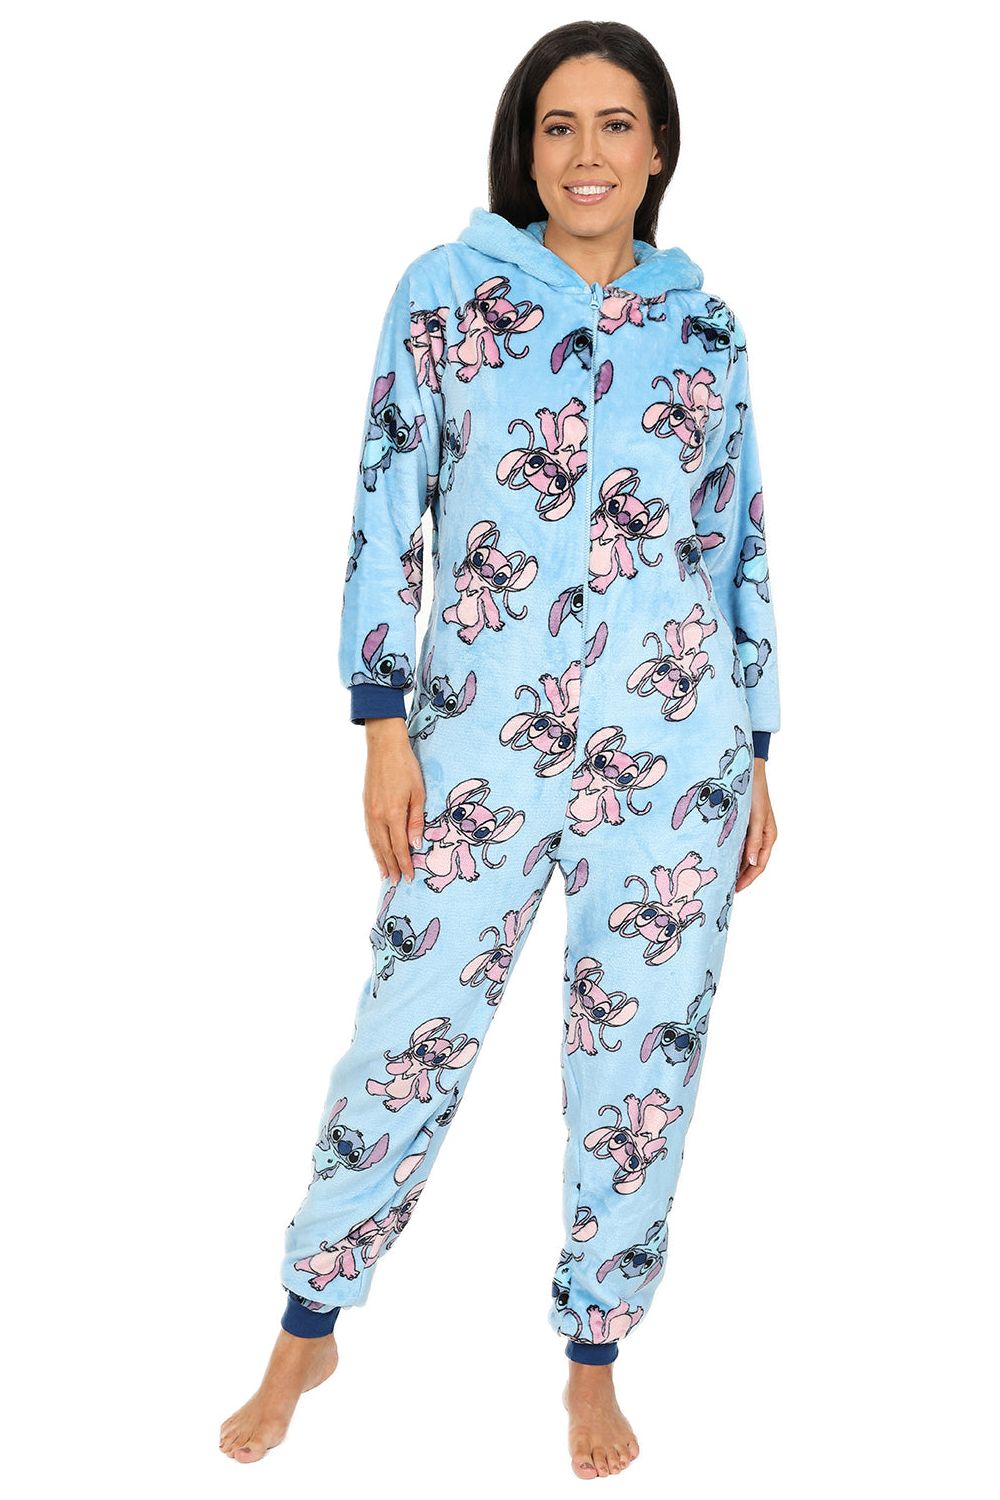 Disney Ladies Stitch & Angel Blue Fleece Sleepsuit Women's All in One